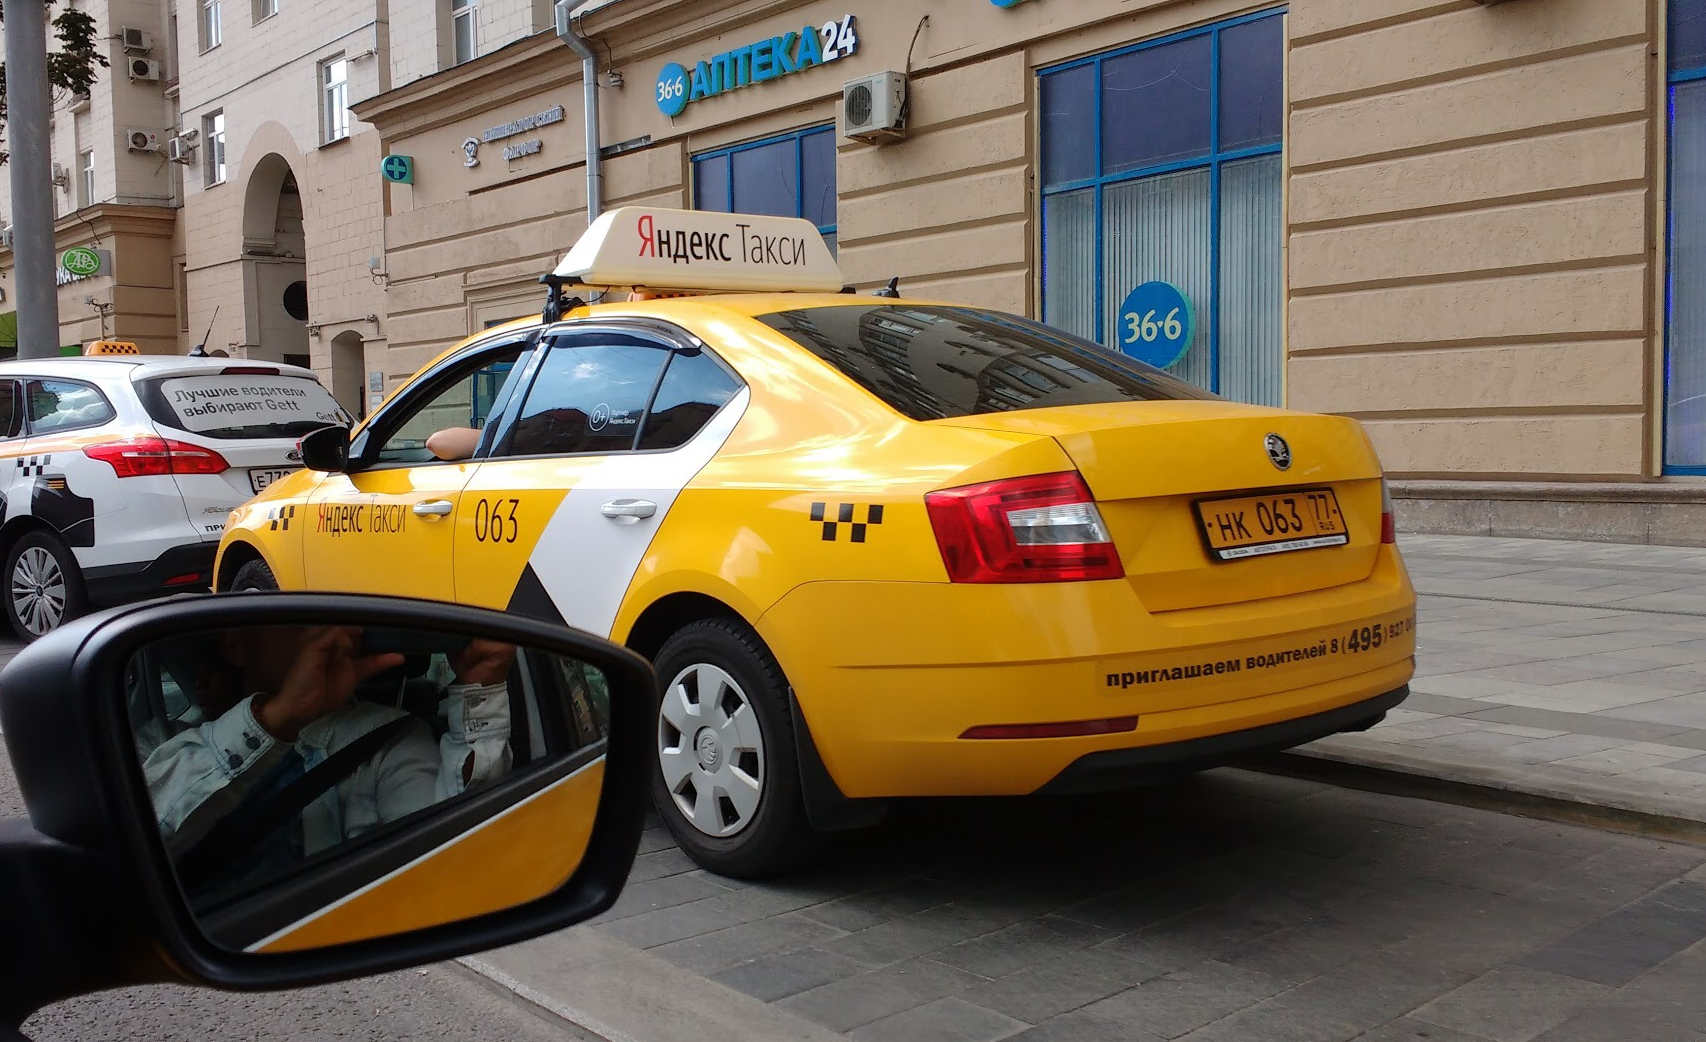 No táxi amarelinho está escrito, em cirílico, "Yandex Taxi" :)